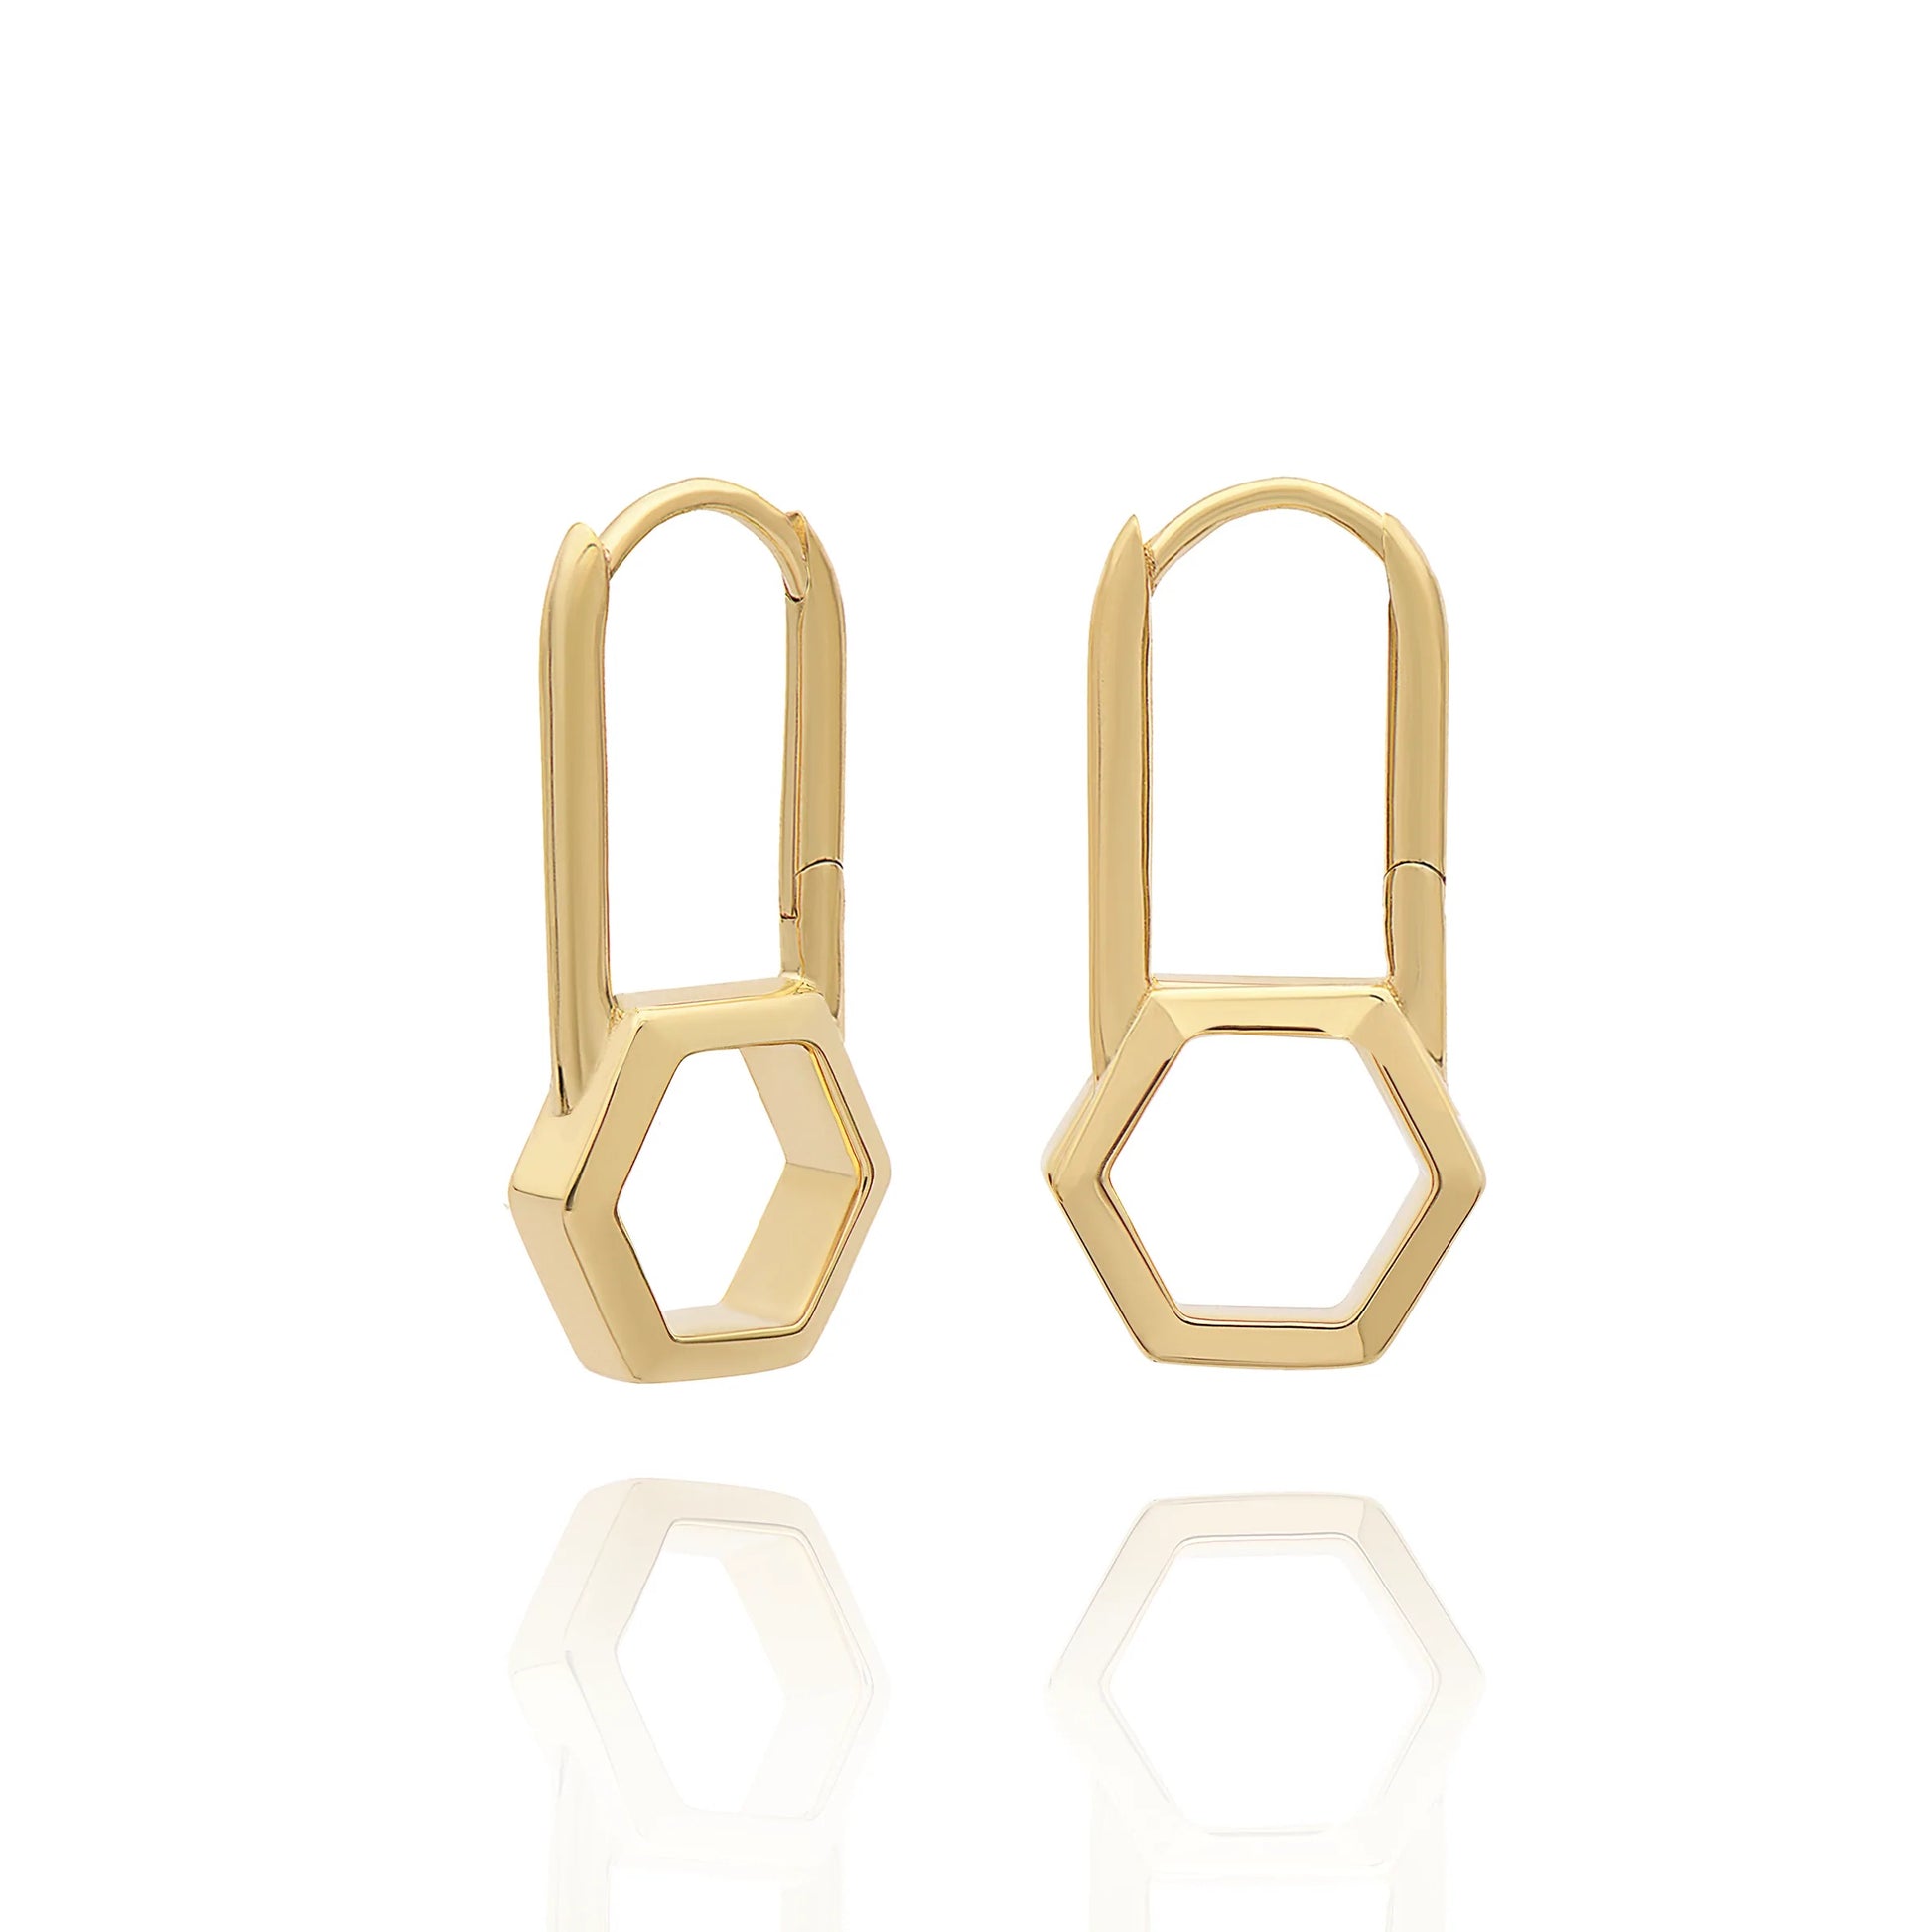 A pair of Rachel Jackson London Hex Padlock Hoops - Gold earrings.